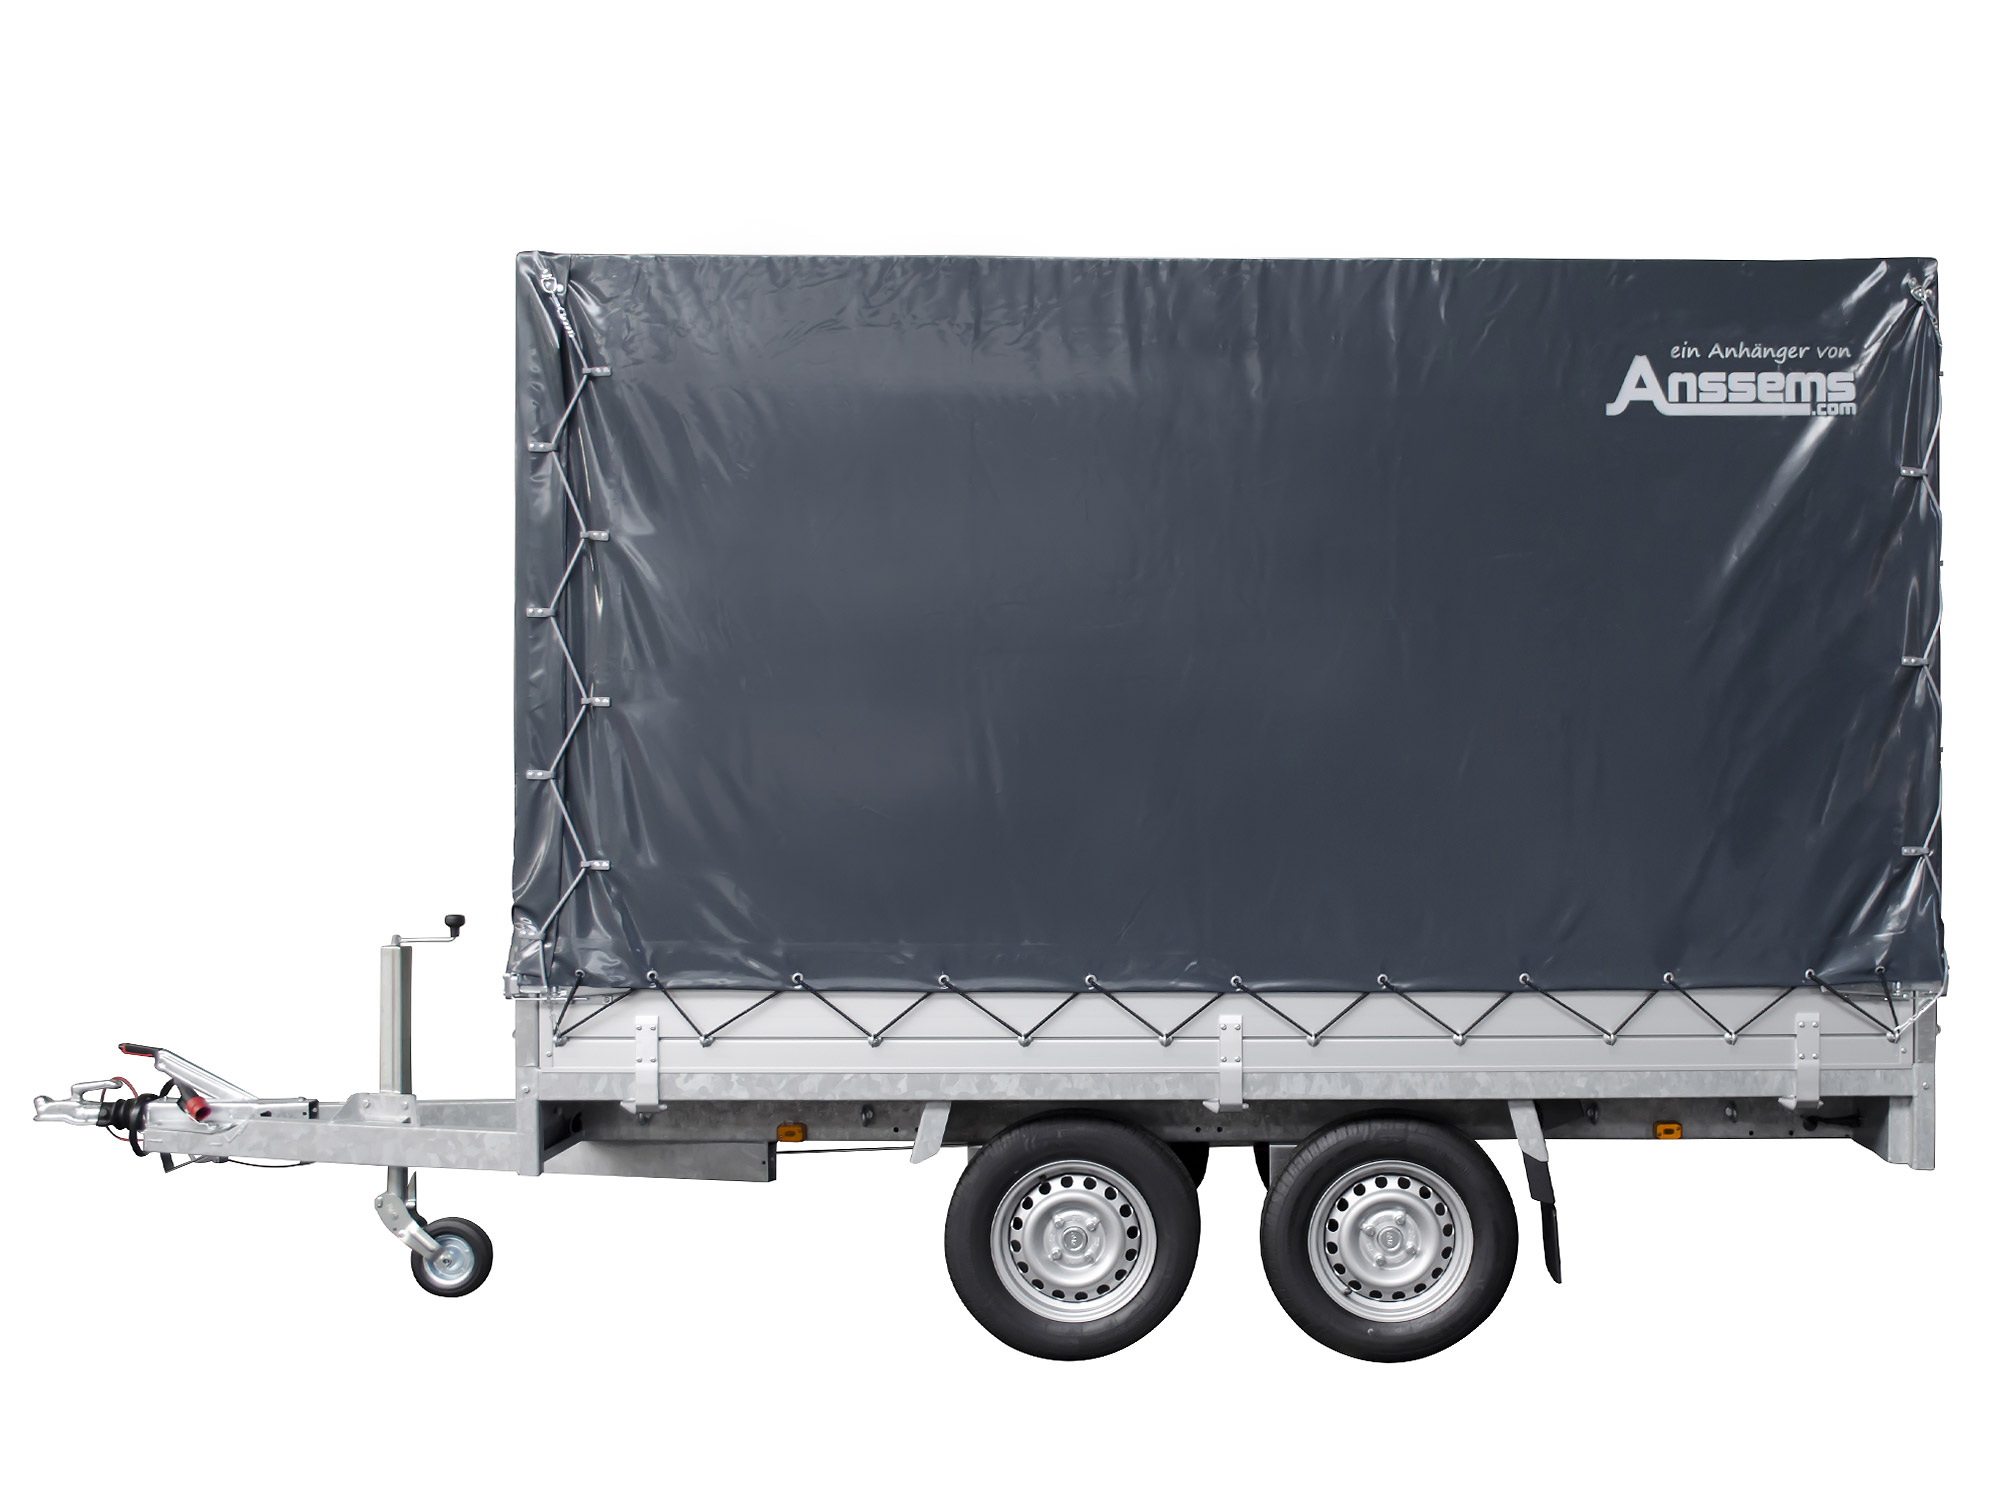 Anssems PKW Anhänger Hochlader Alu 2000 kg, Ladefläche 3,25 x 1,78 m mit Aktionsplane 1,80m